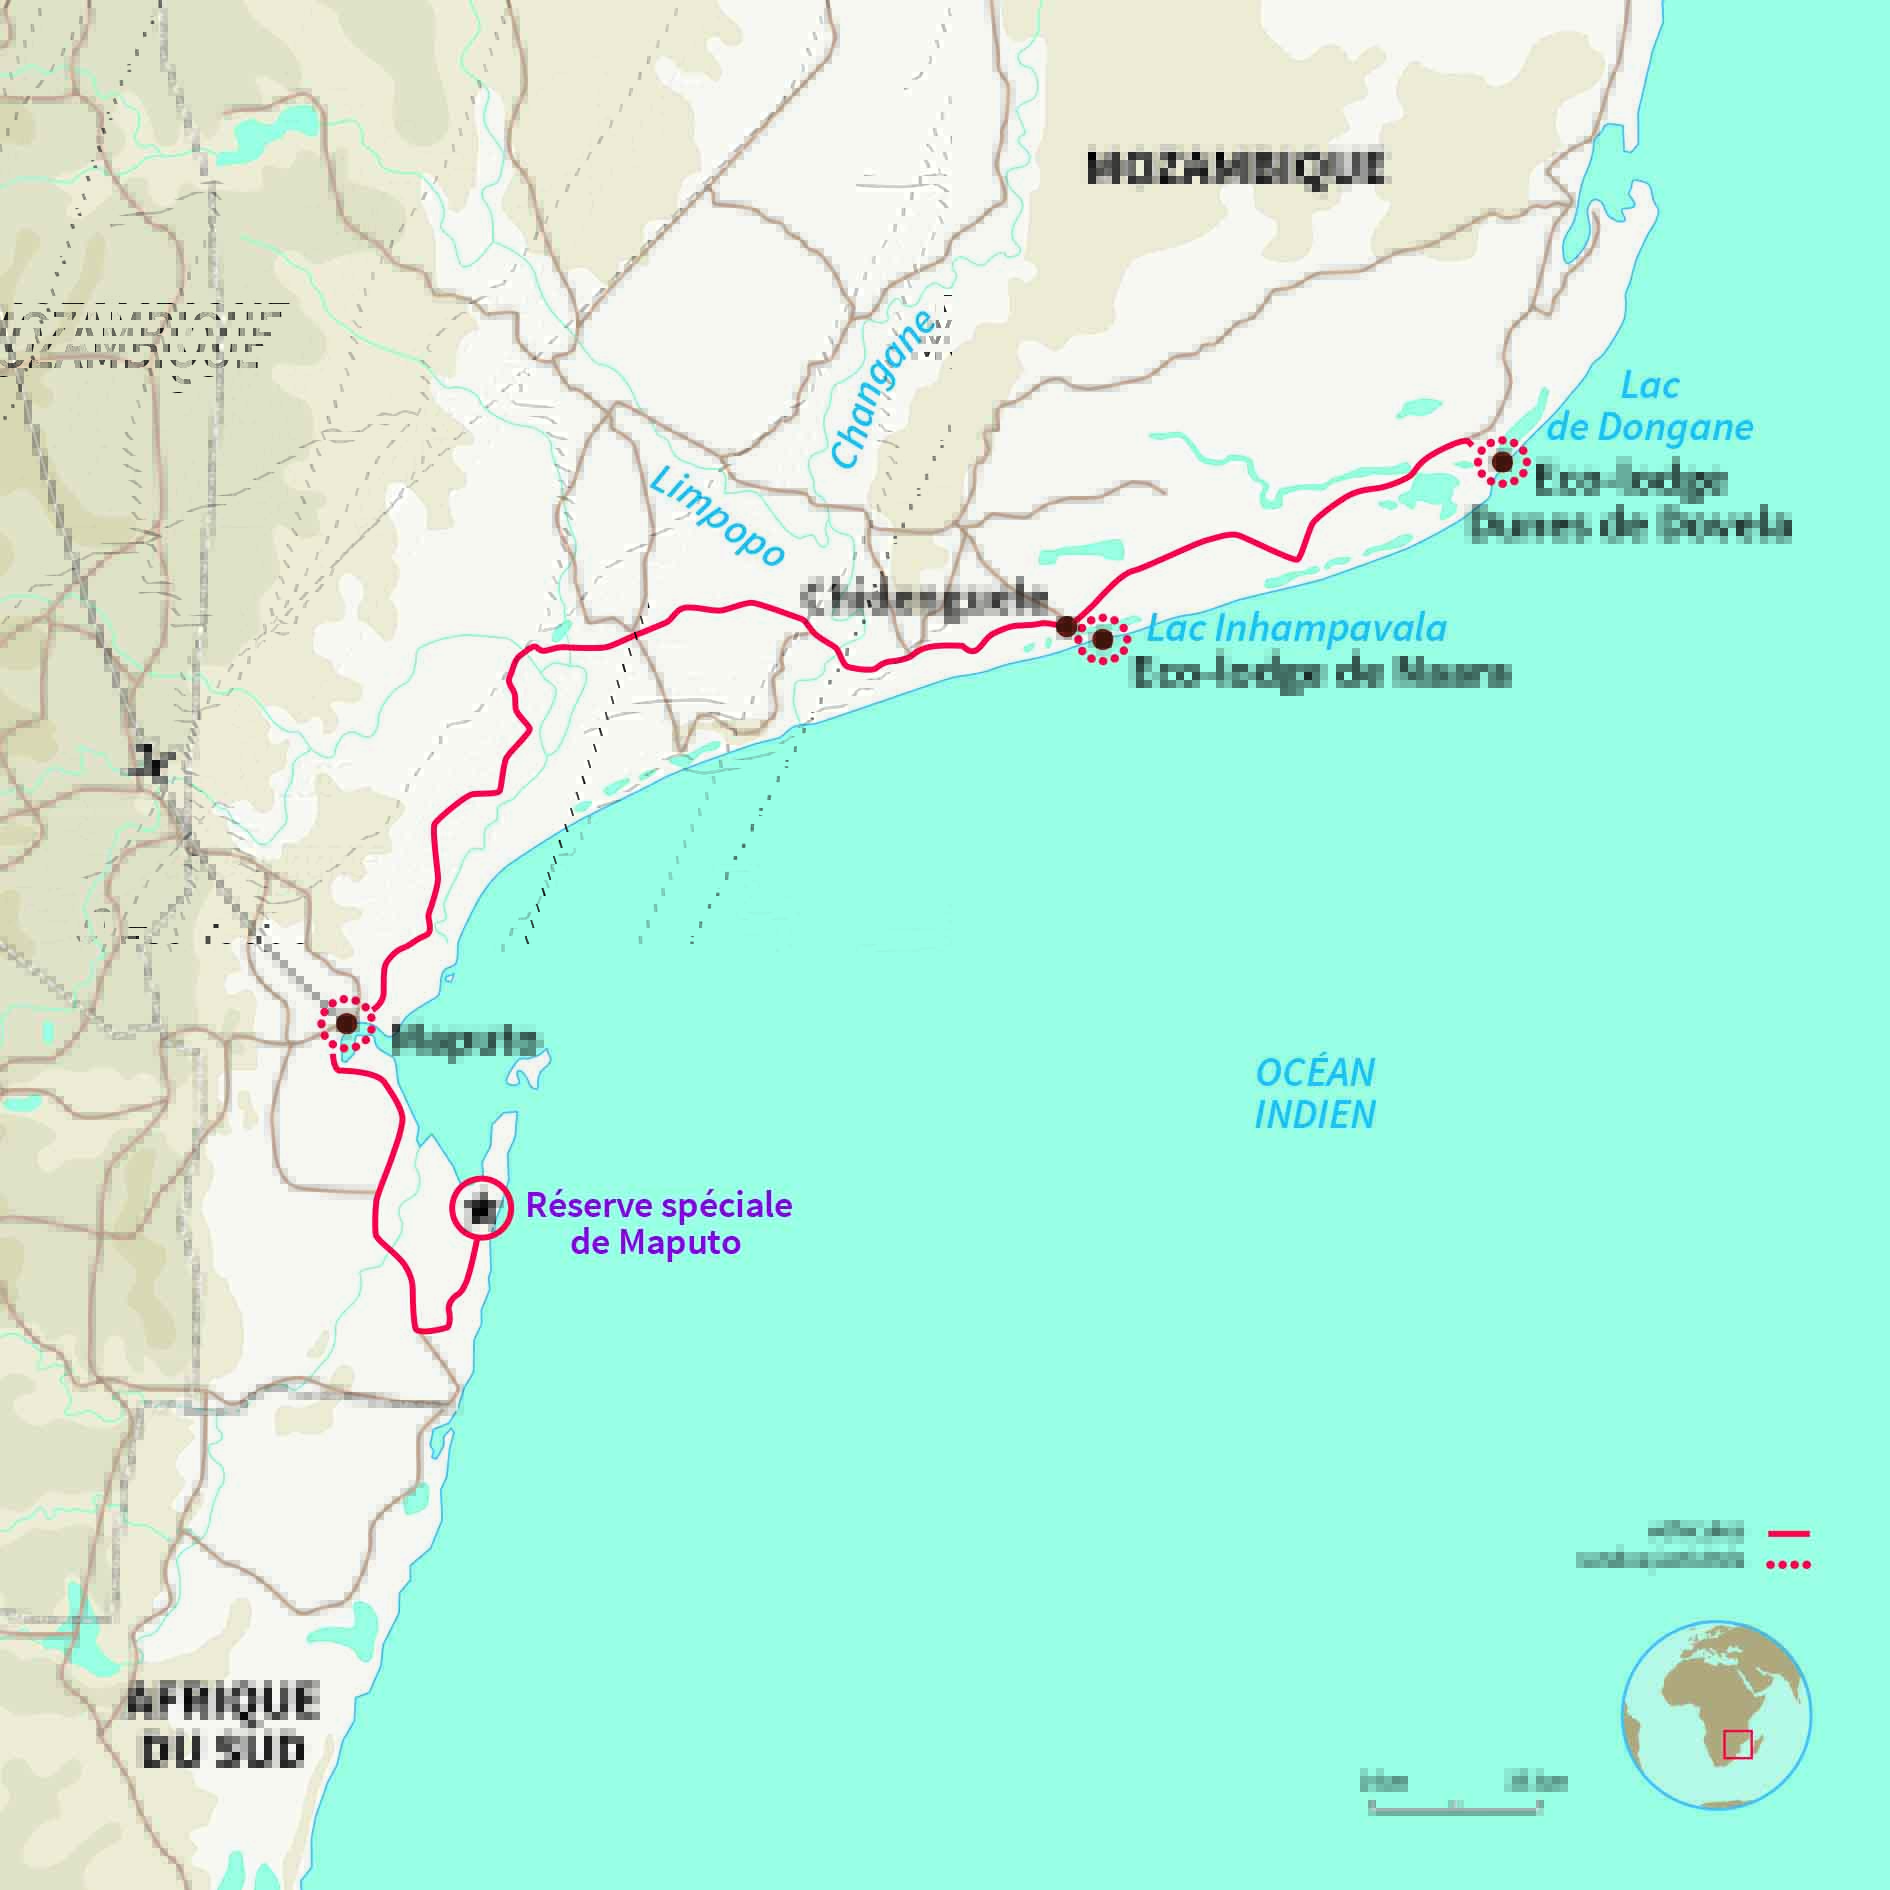 Carte Mozambique : De Maputo aux Dunes de Dovela 